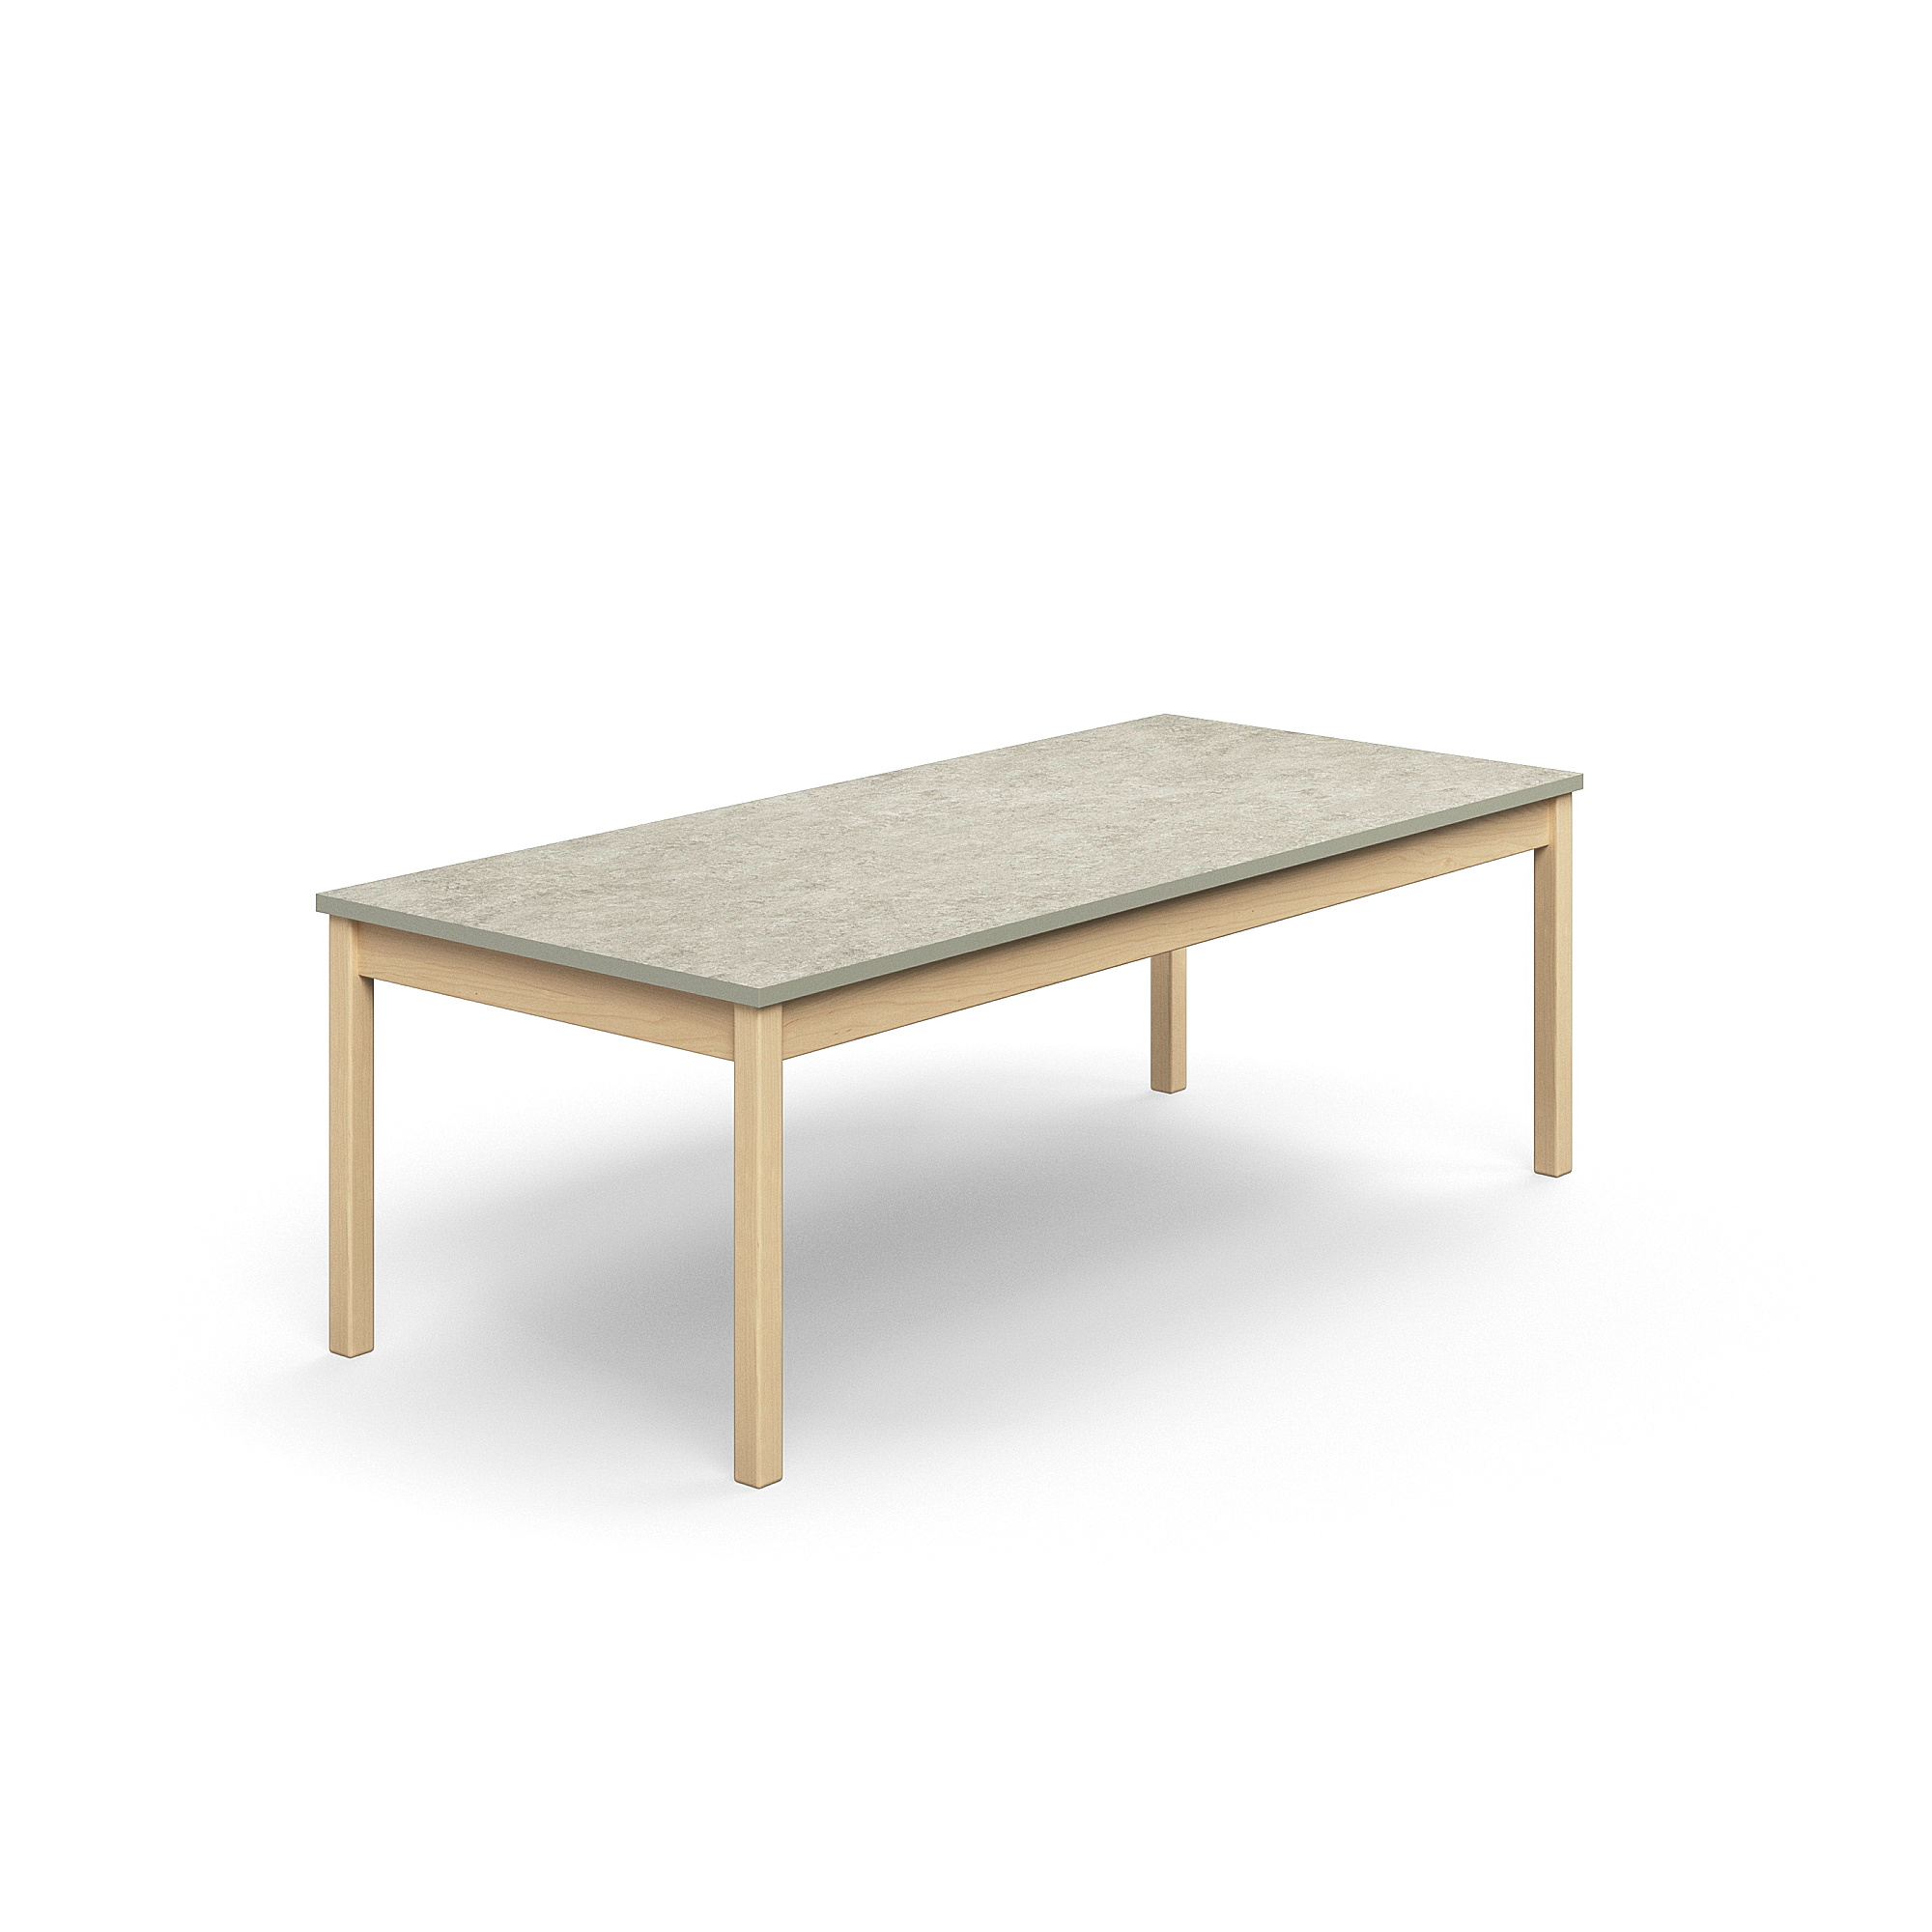 Stůl DECIBEL, 1800x800x590 mm, akustické linoleum, bříza/šedá